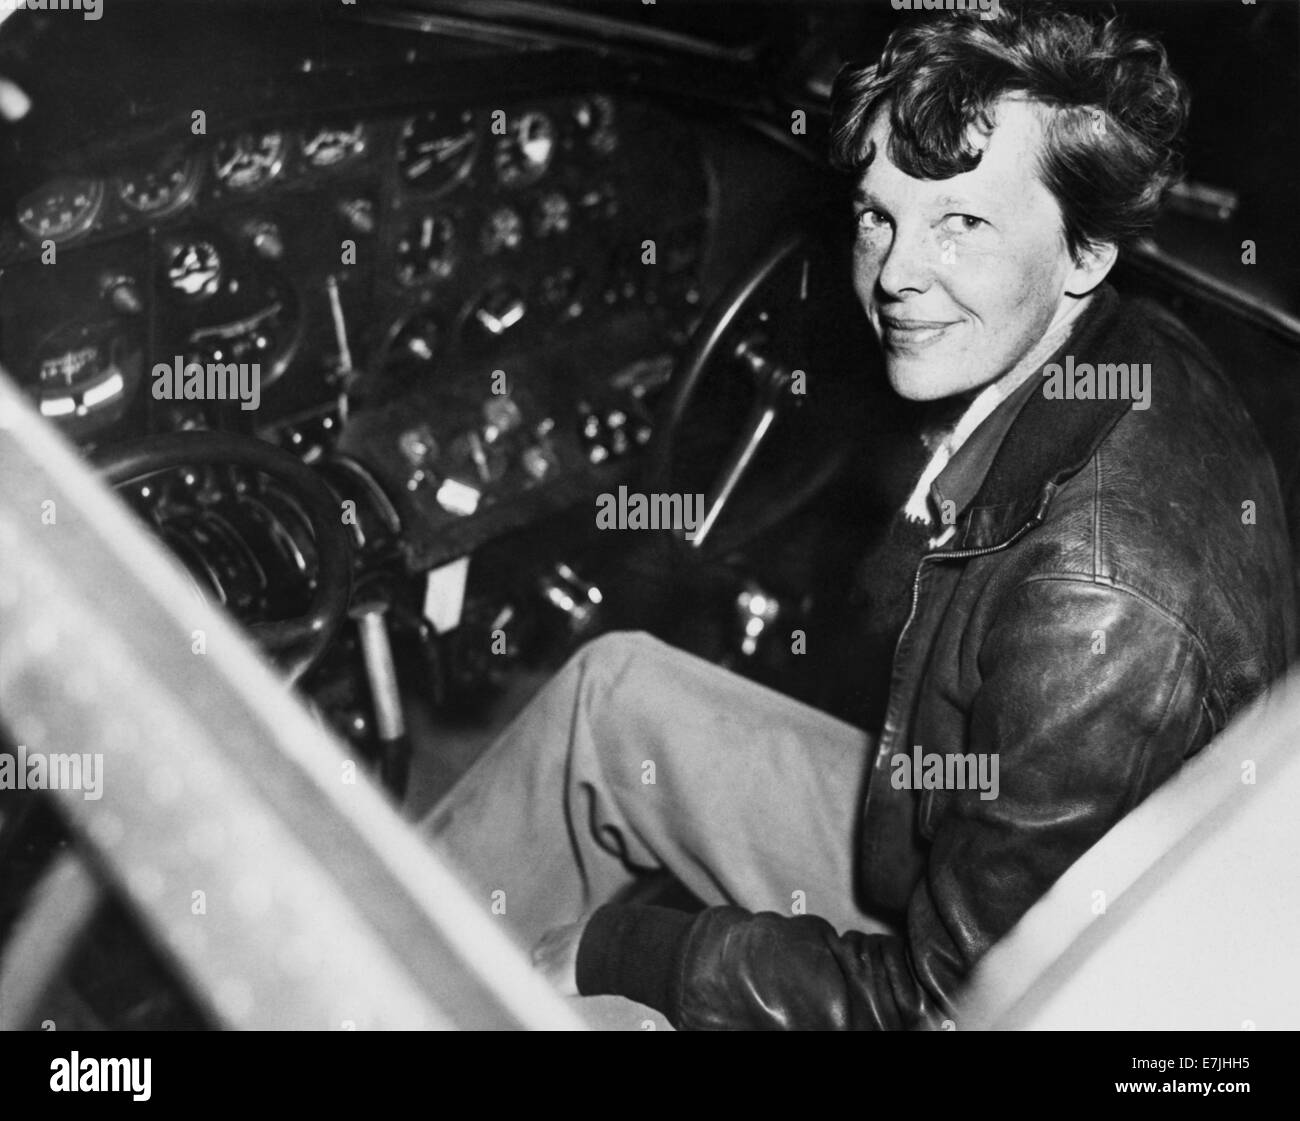 Vintage-Foto der amerikanischen Luftfahrtpionierin und Autorin Amelia Earhart (1897 – 1939 für tot erklärt) – Earhart und ihr Navigator Fred Noonan verschwanden 1937 bekanntermaßen, als sie versuchte, das erste Weibchen zu werden, das einen Rundflug über den Globus absolvierte. Earhart ist um 1937 im Cockpit eines Electra-Flugzeugs zu sehen. Stockfoto